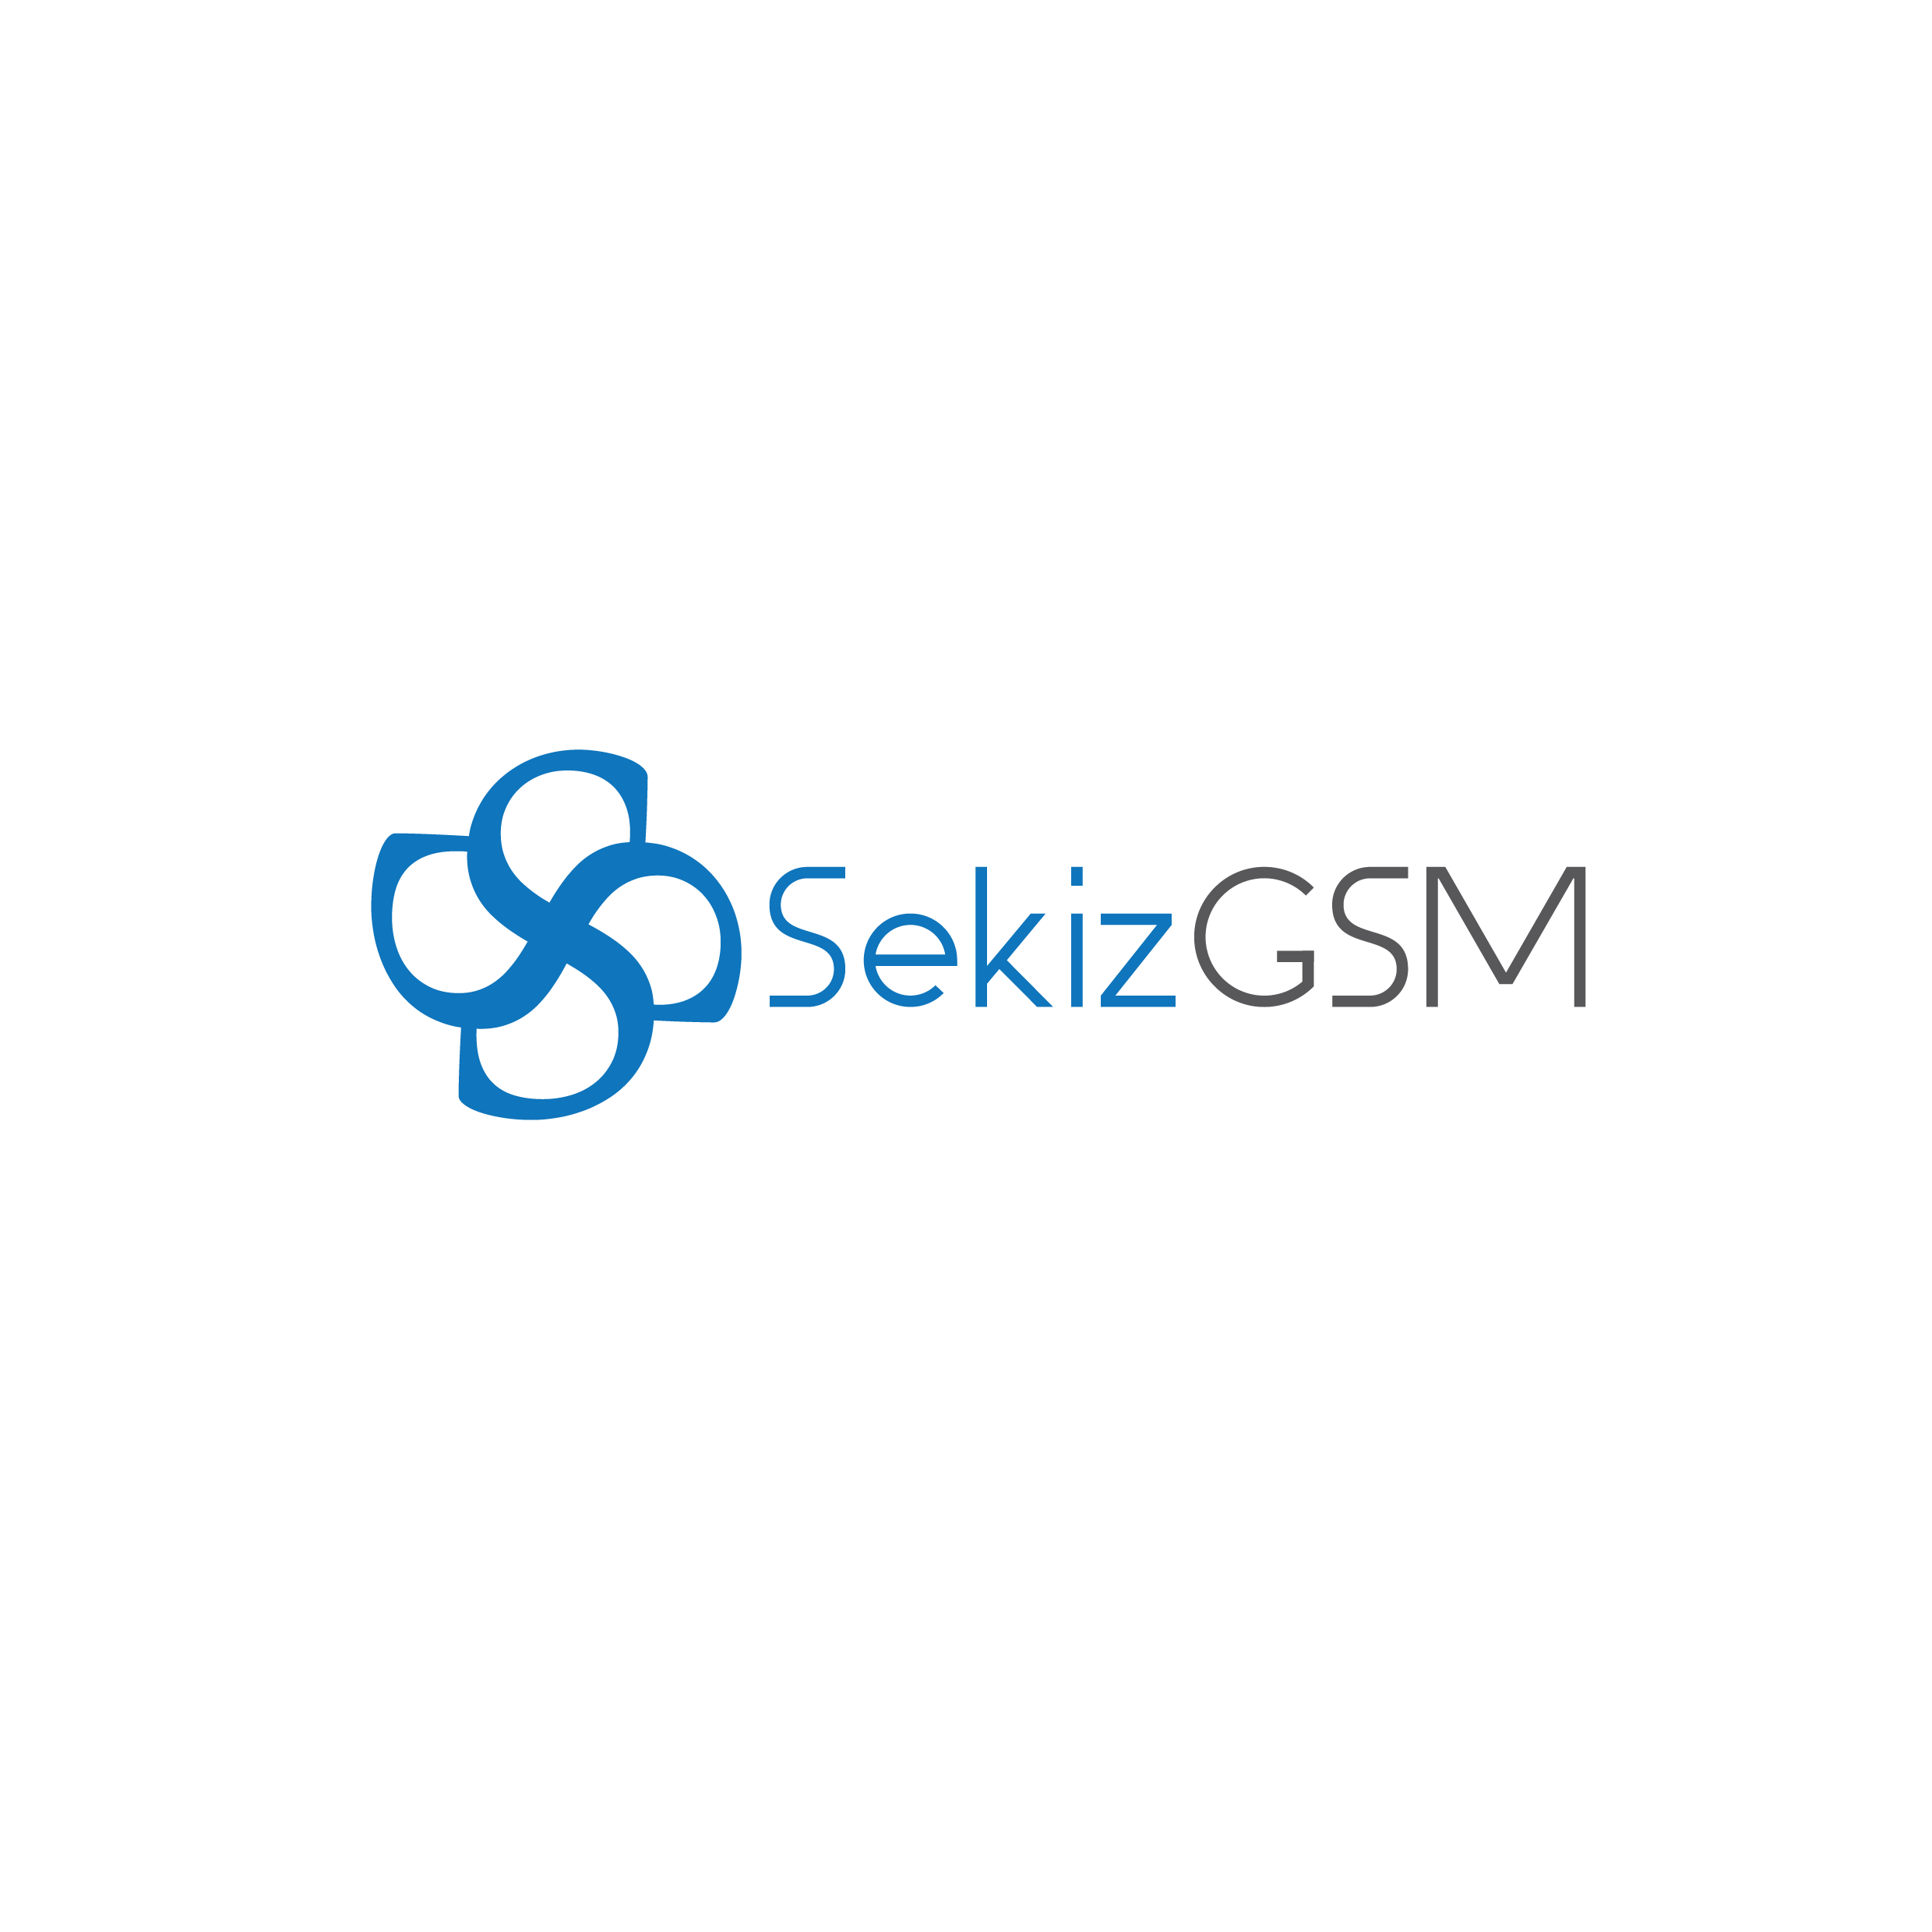 Sekiz GSM İletişim ve Haberleşme Hizmetleri